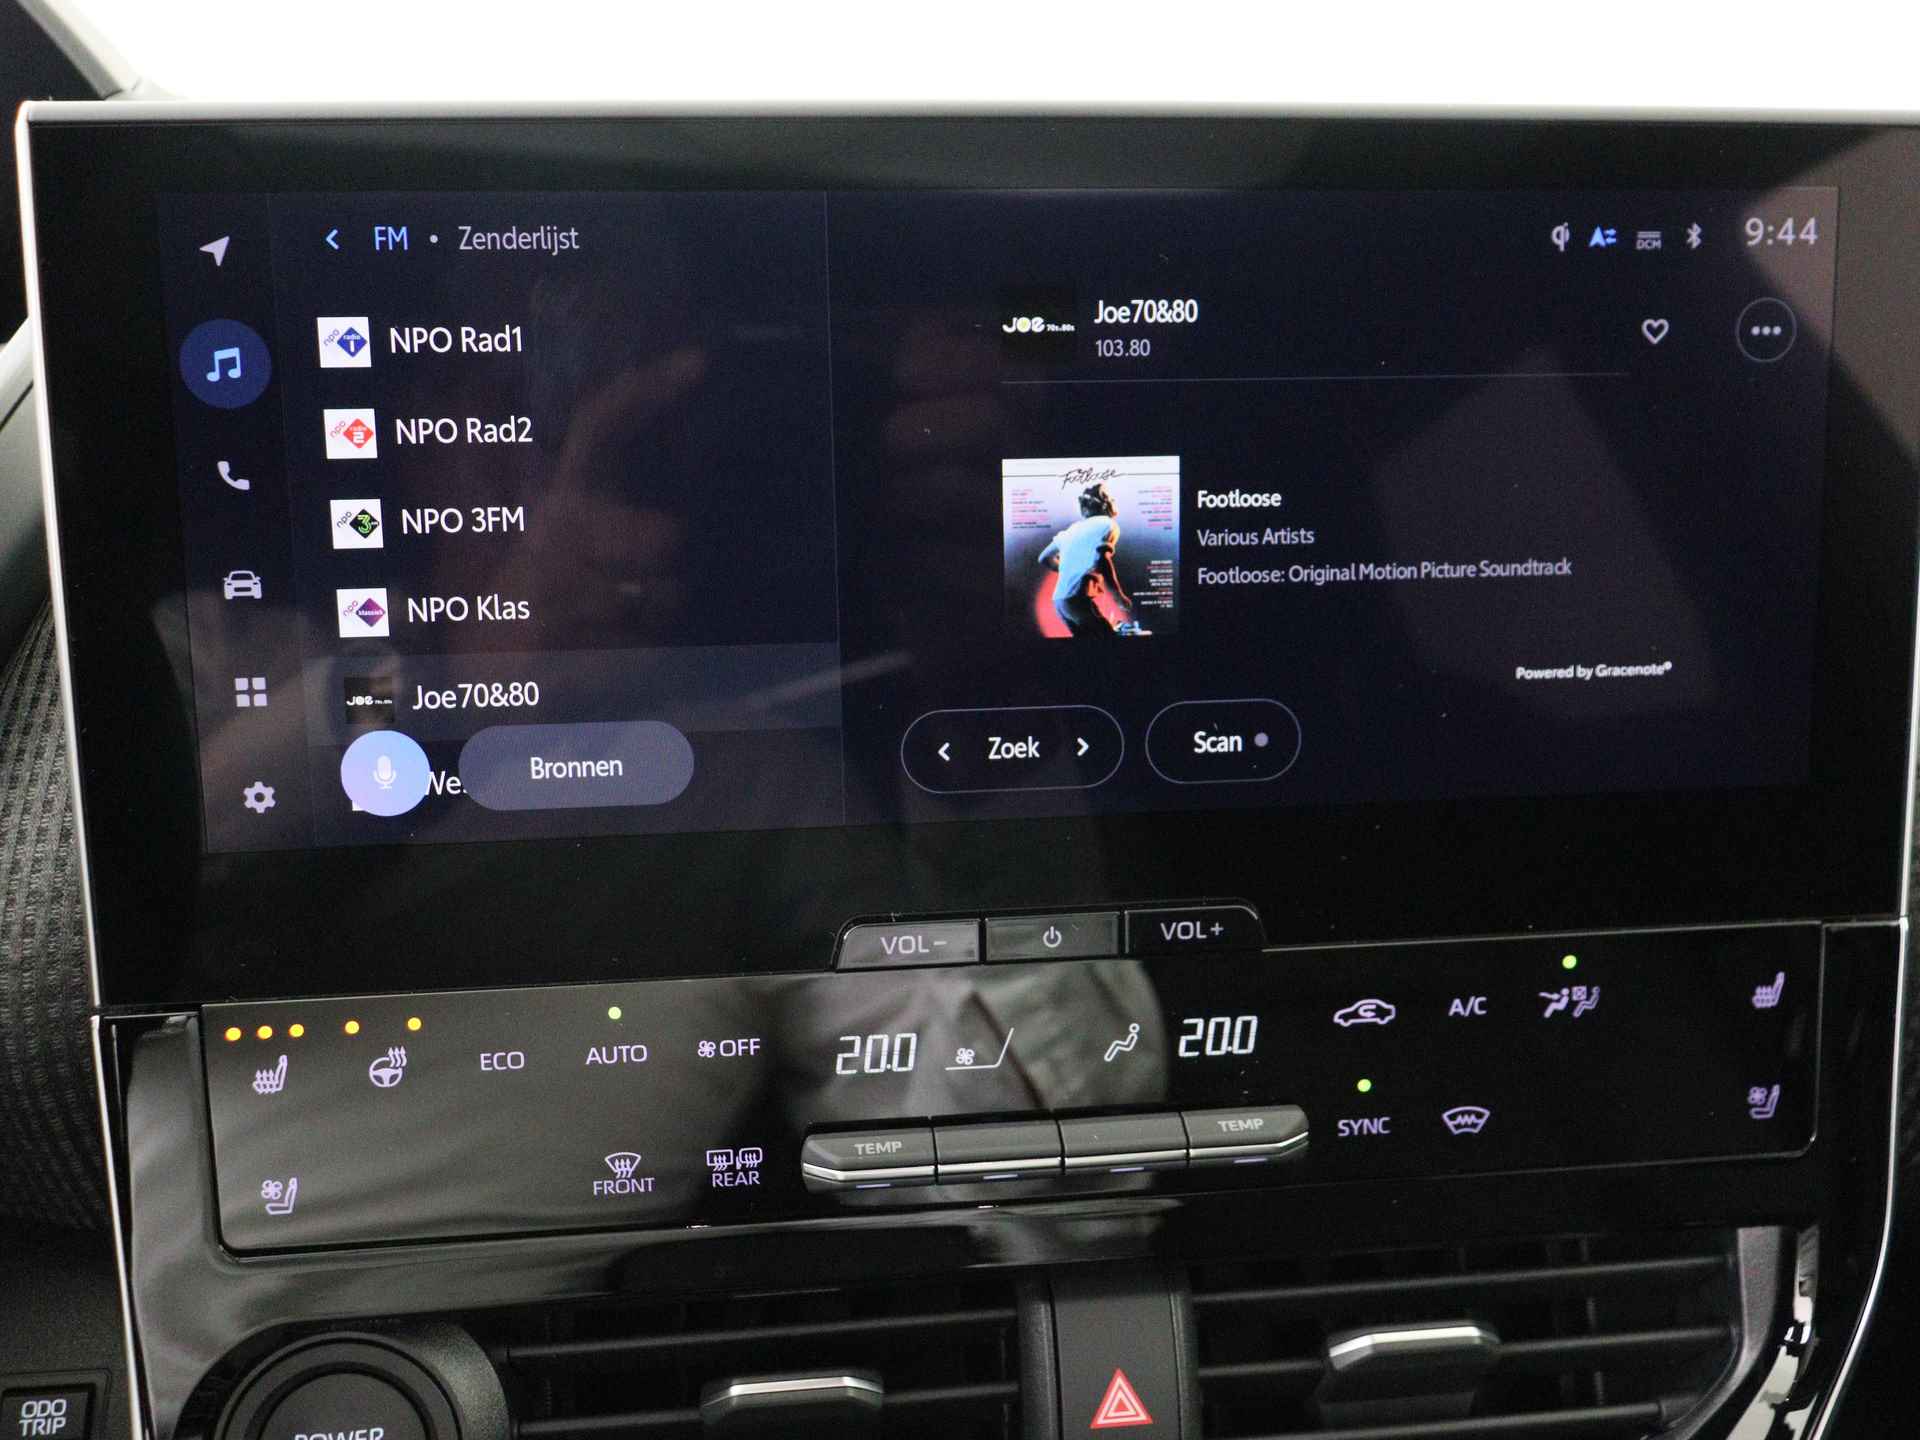 Toyota Bz4x Launch Edition Premium Bi-Tone uitvoering | Navigatie | Stoel&stuur verwarming | My T app | Panoramadak | Wegenbelasting vrij | Subsidie €2000,- aanvraag mogelijk. - 46/48